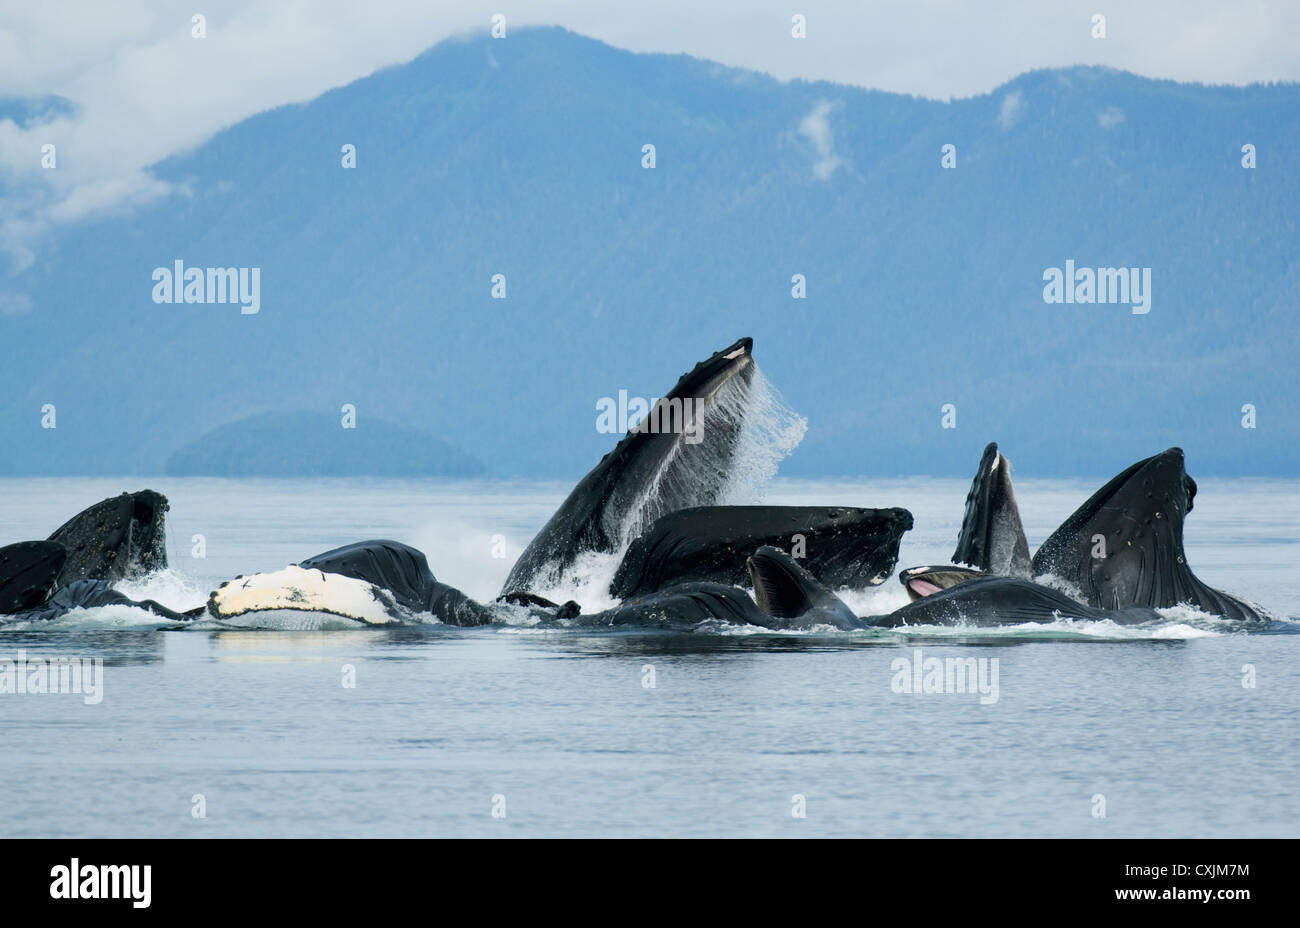 Les baleines à bosse (Megaptera novaeangliae) en collaboration l'alimentation, la 'compensation' Bulle-détroit Chatham, Alaska, Juillet Banque D'Images